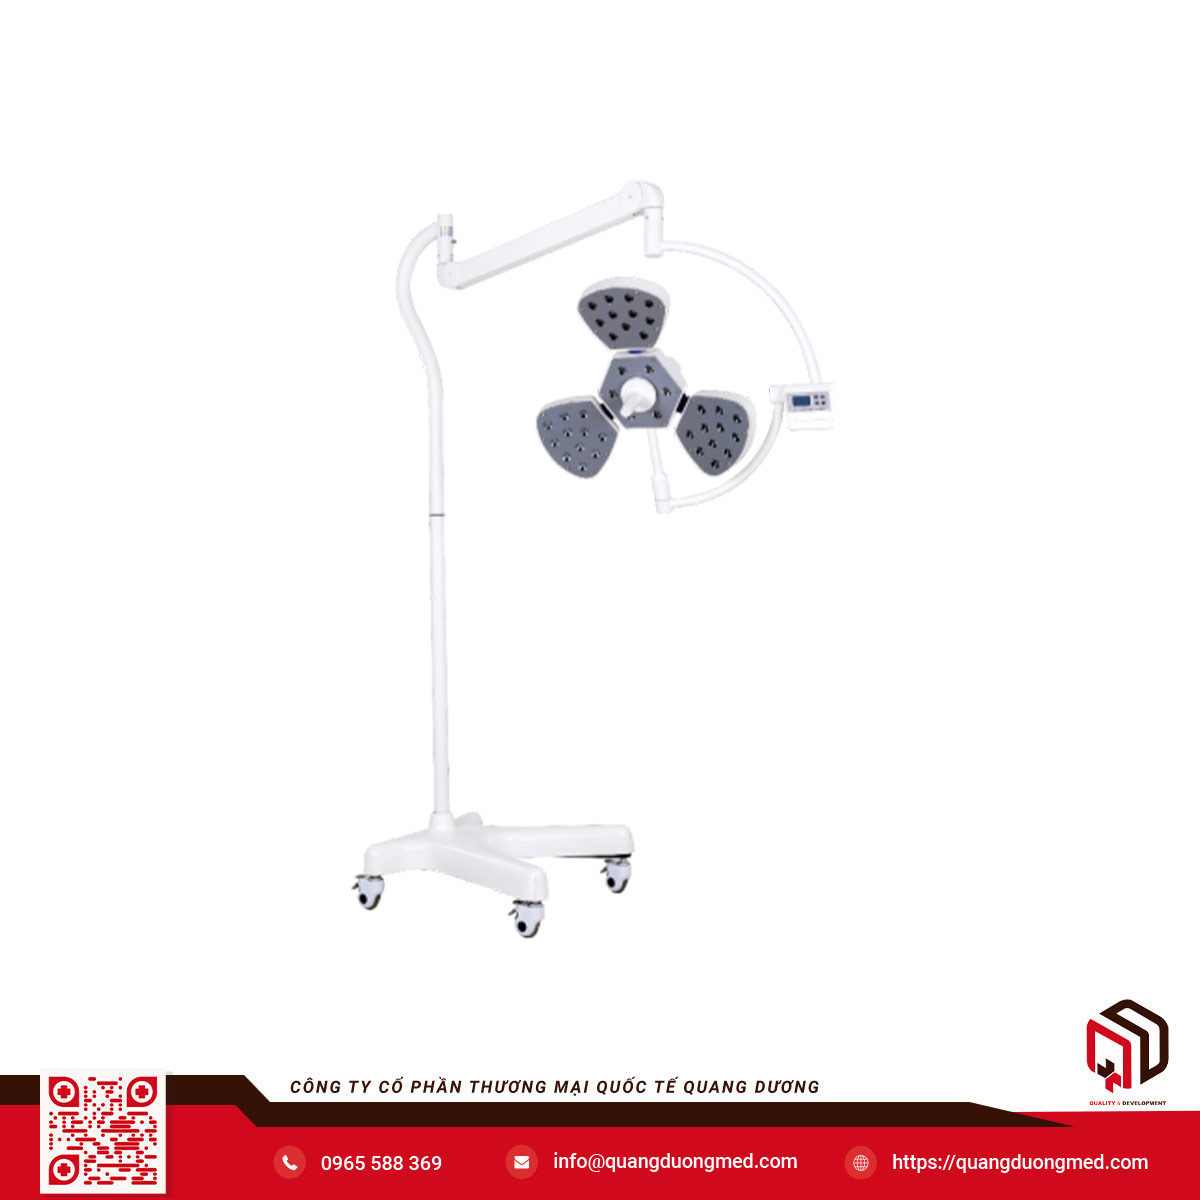 Đèn mổ di động 5 cánh cao cấp - Model: KYLED5 - Hãng sản xuất: Shandong Qufu Healthyou Medical Technology Co.,Ltd